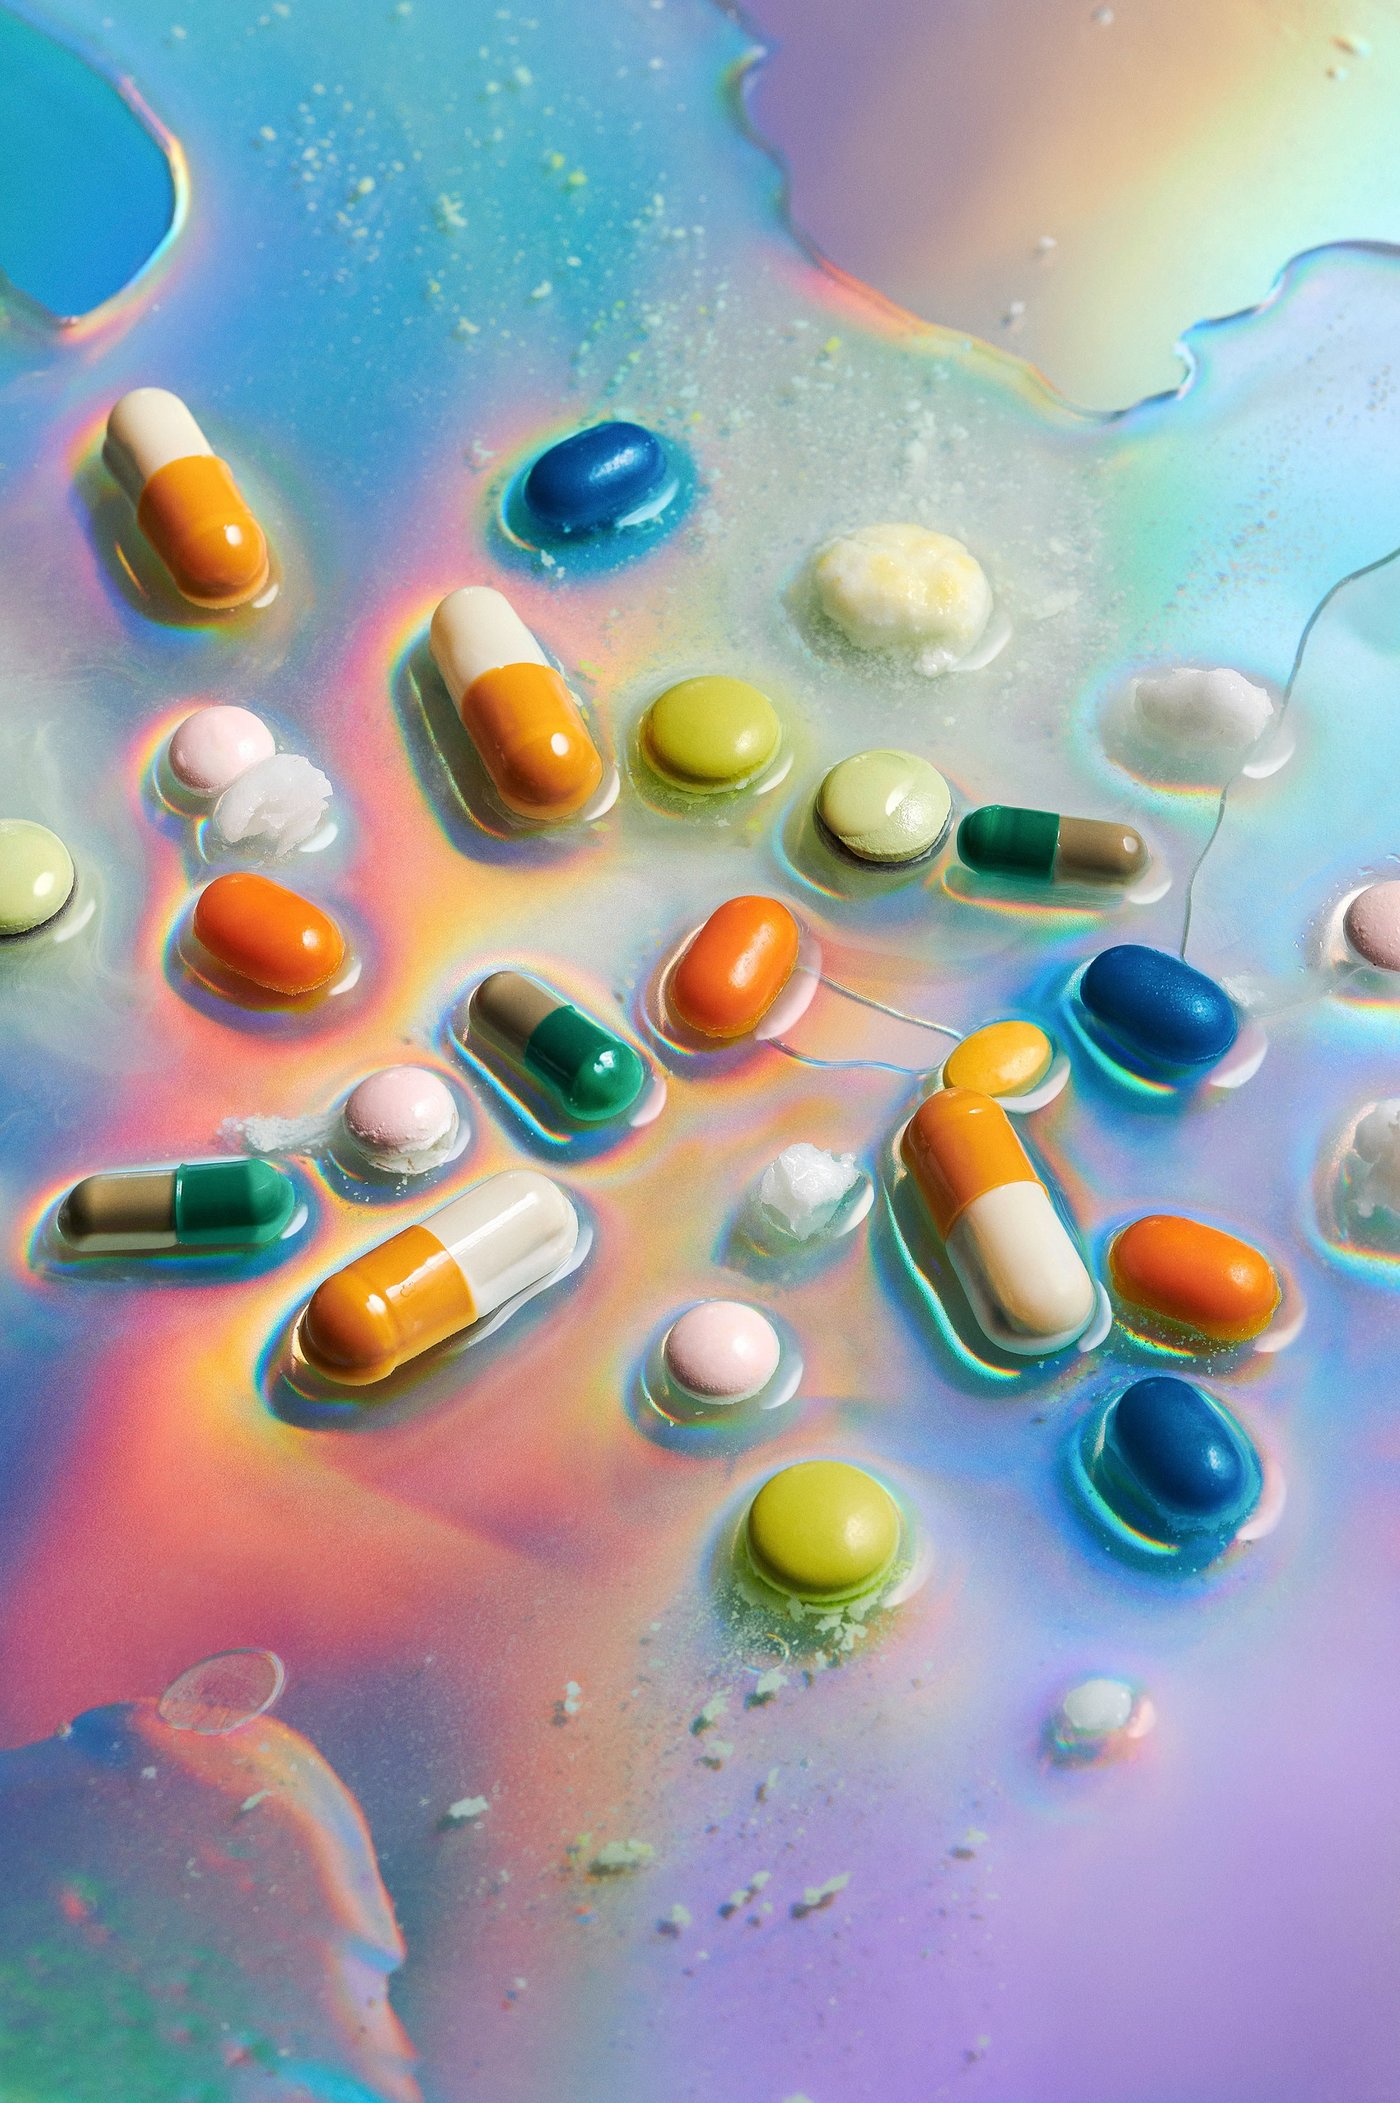 Foto von Pillen und Tabletten in unterschiedlichen Farben, die in durchsichtiger Flüssigkeit liegen. Manche befinden sich in einem Auflösezustand. Die Flüssigkeit schimmert bunt und fluoresziert